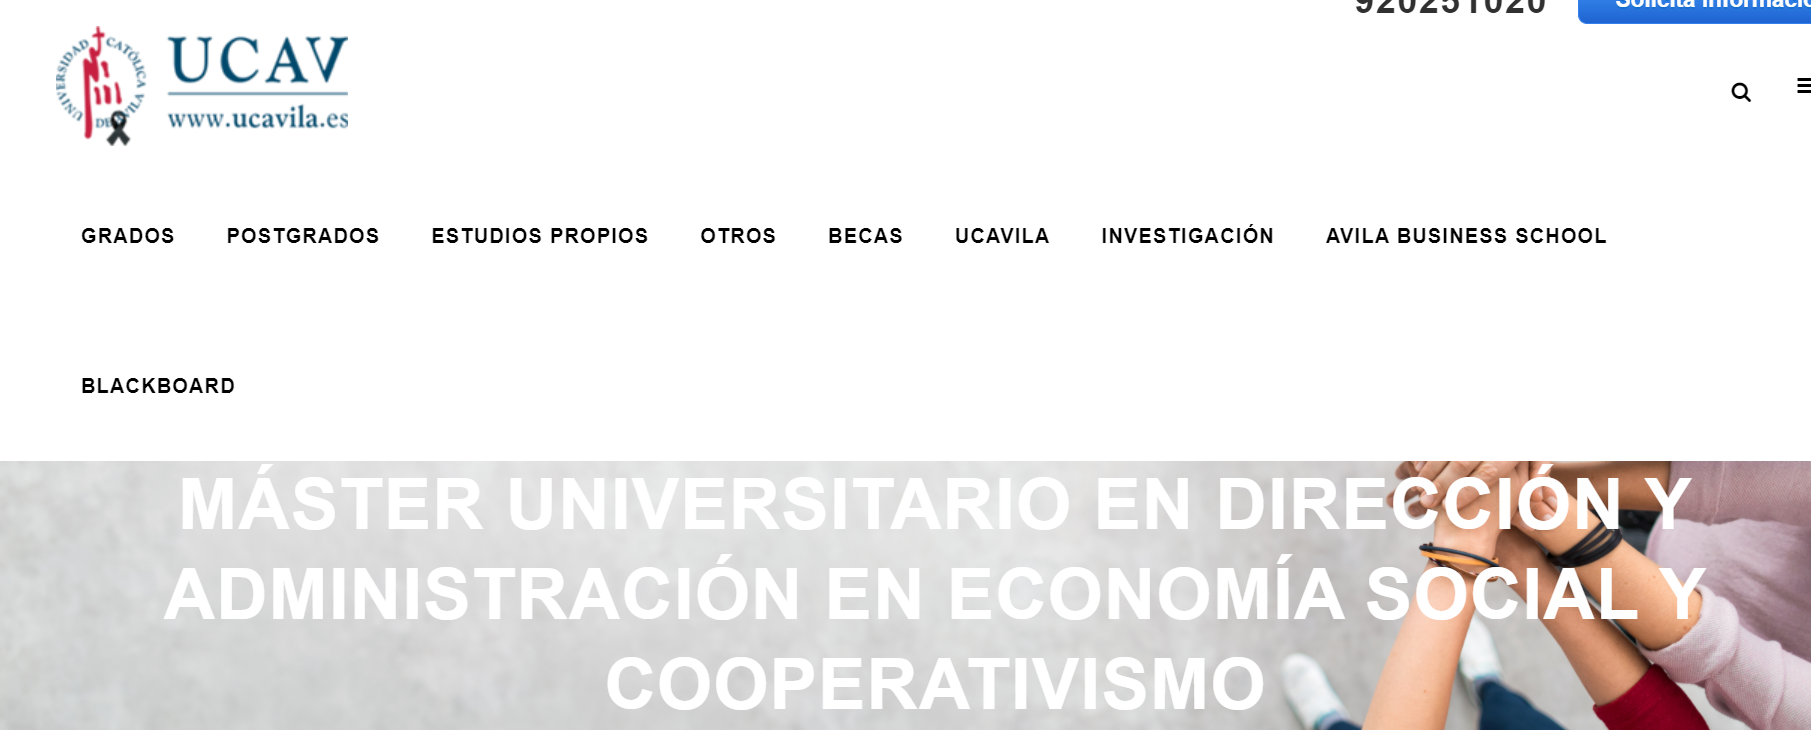 Máster universitario en Dirección y Administración en Economía Social y Cooperativismo. Curso 2020 – 2021. 4ª edición